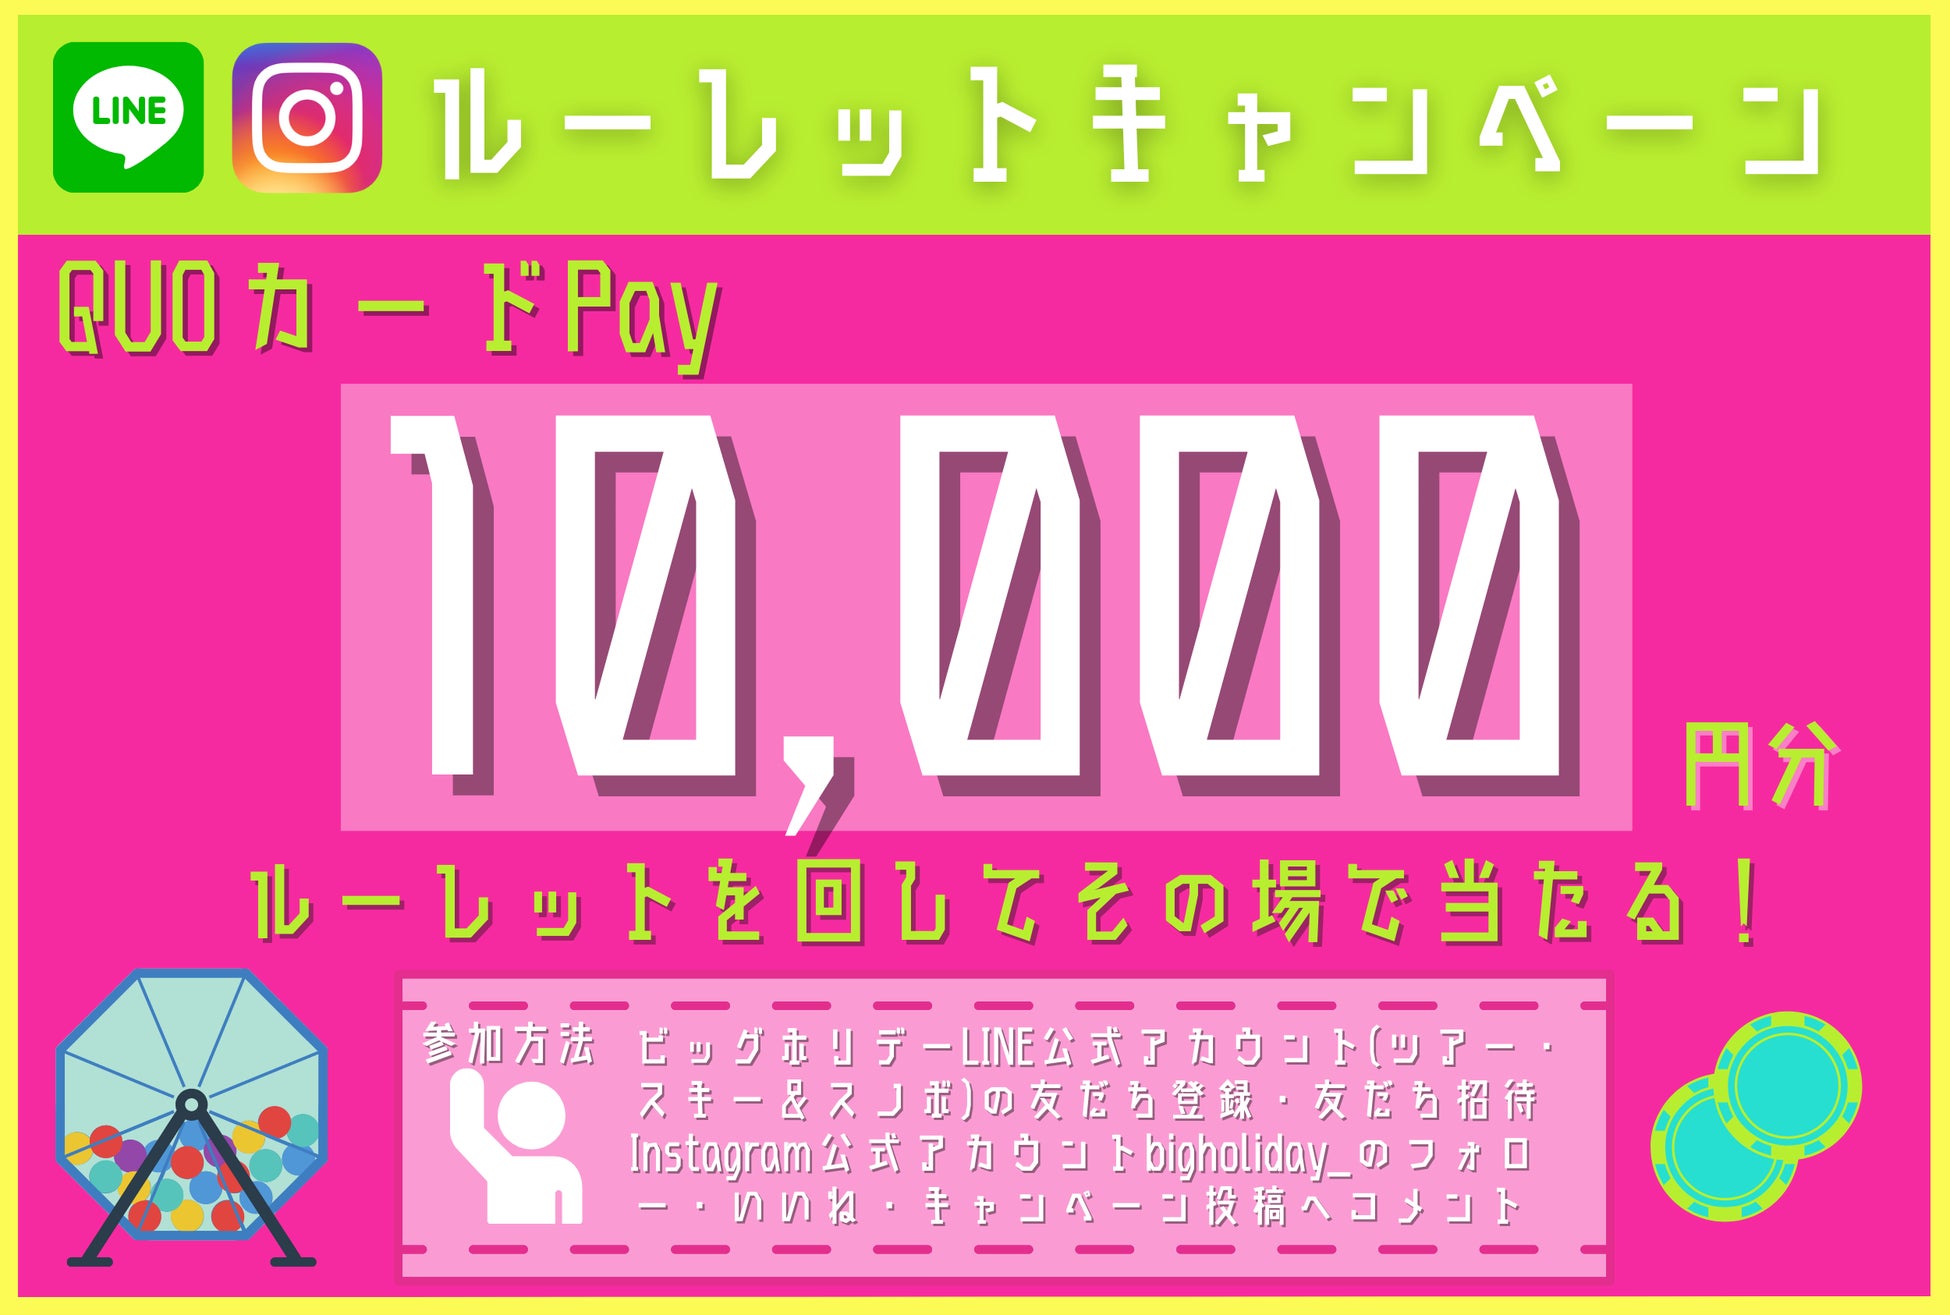 抽選でQUOカードPay10,000円分が当たる！日頃のご愛顧に感謝をこめて、LINE・Instagramルーレットキャンペーン3月13日より開催！